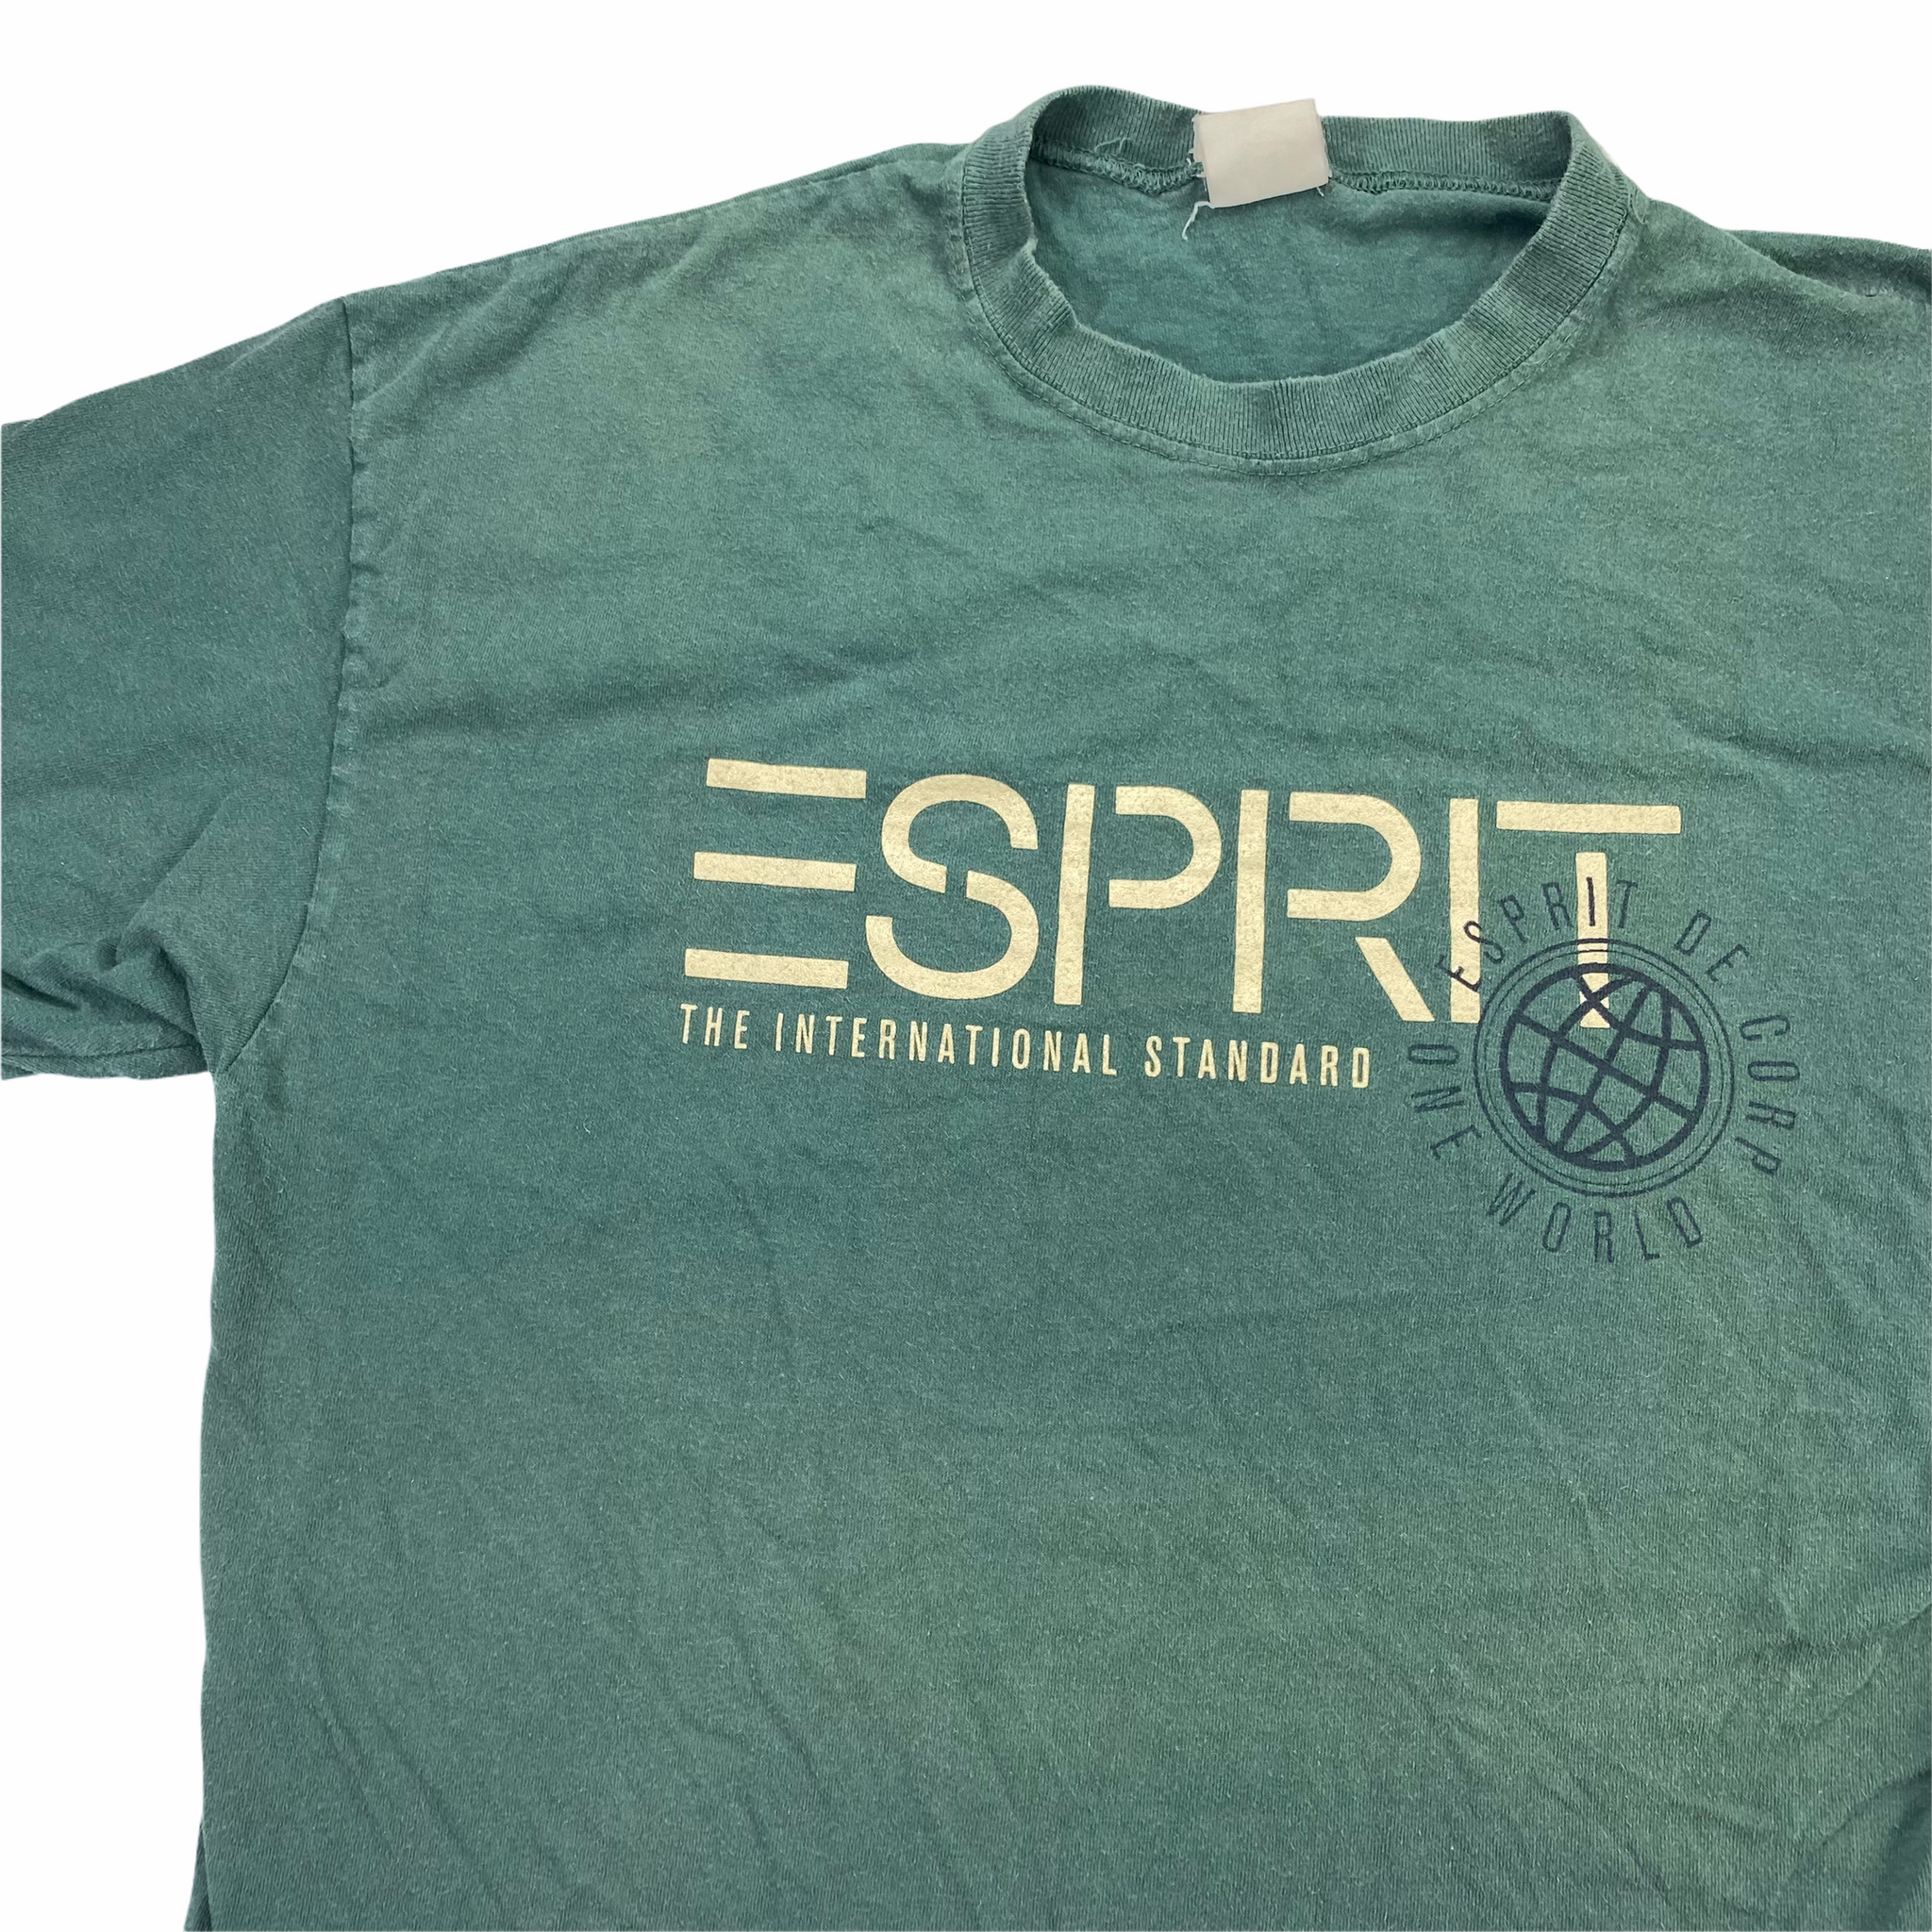 90s Esprit T-Shirt XL Vintage Sponsor